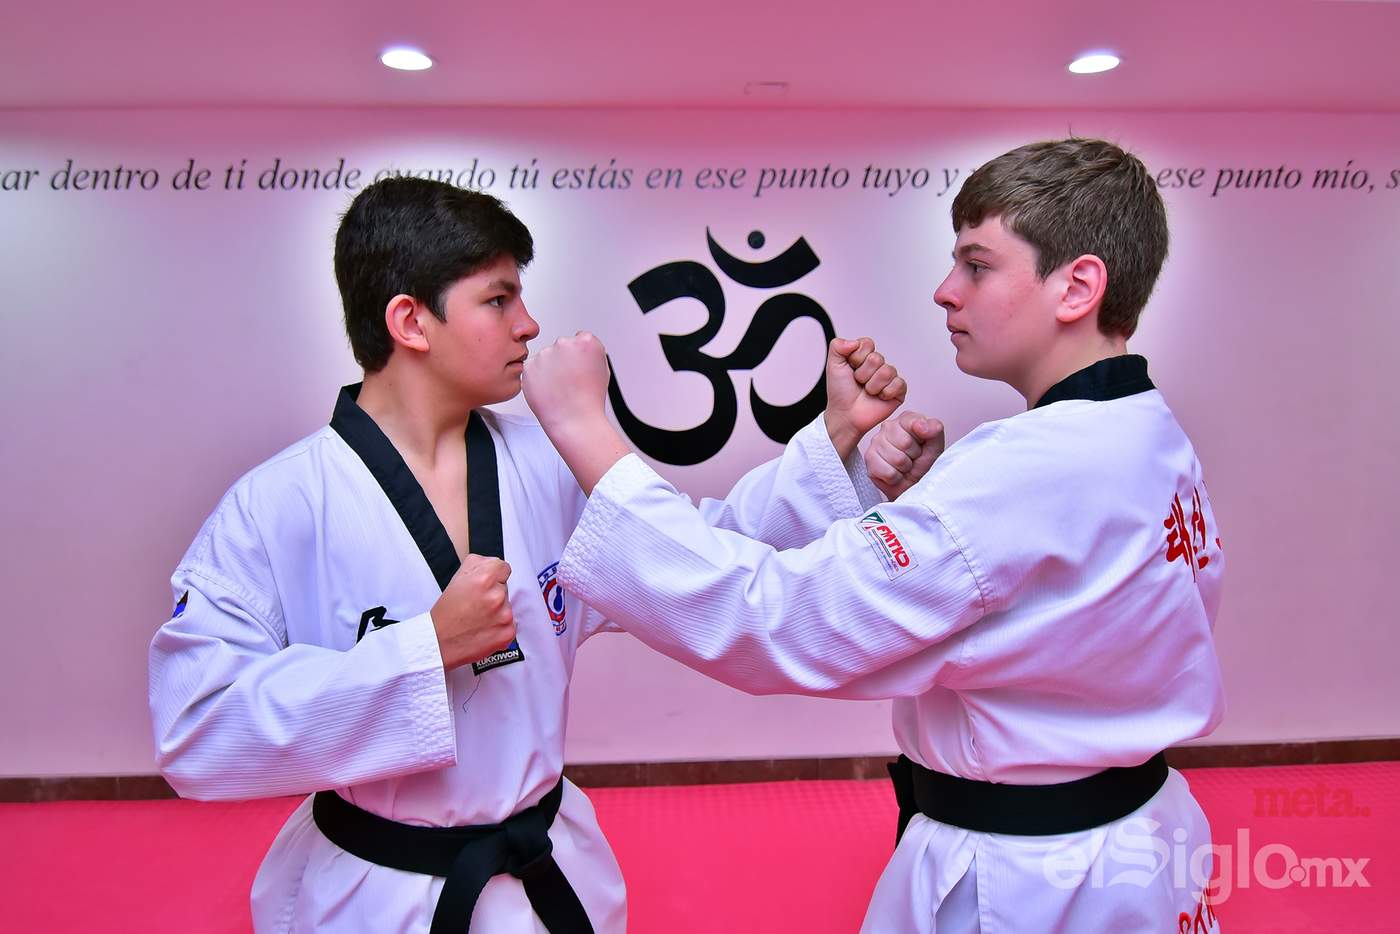 Los hermanos Pérez Sánchez han sido constantes, ya que entrenan tae kwon do desde que tenían cinco años de edad.